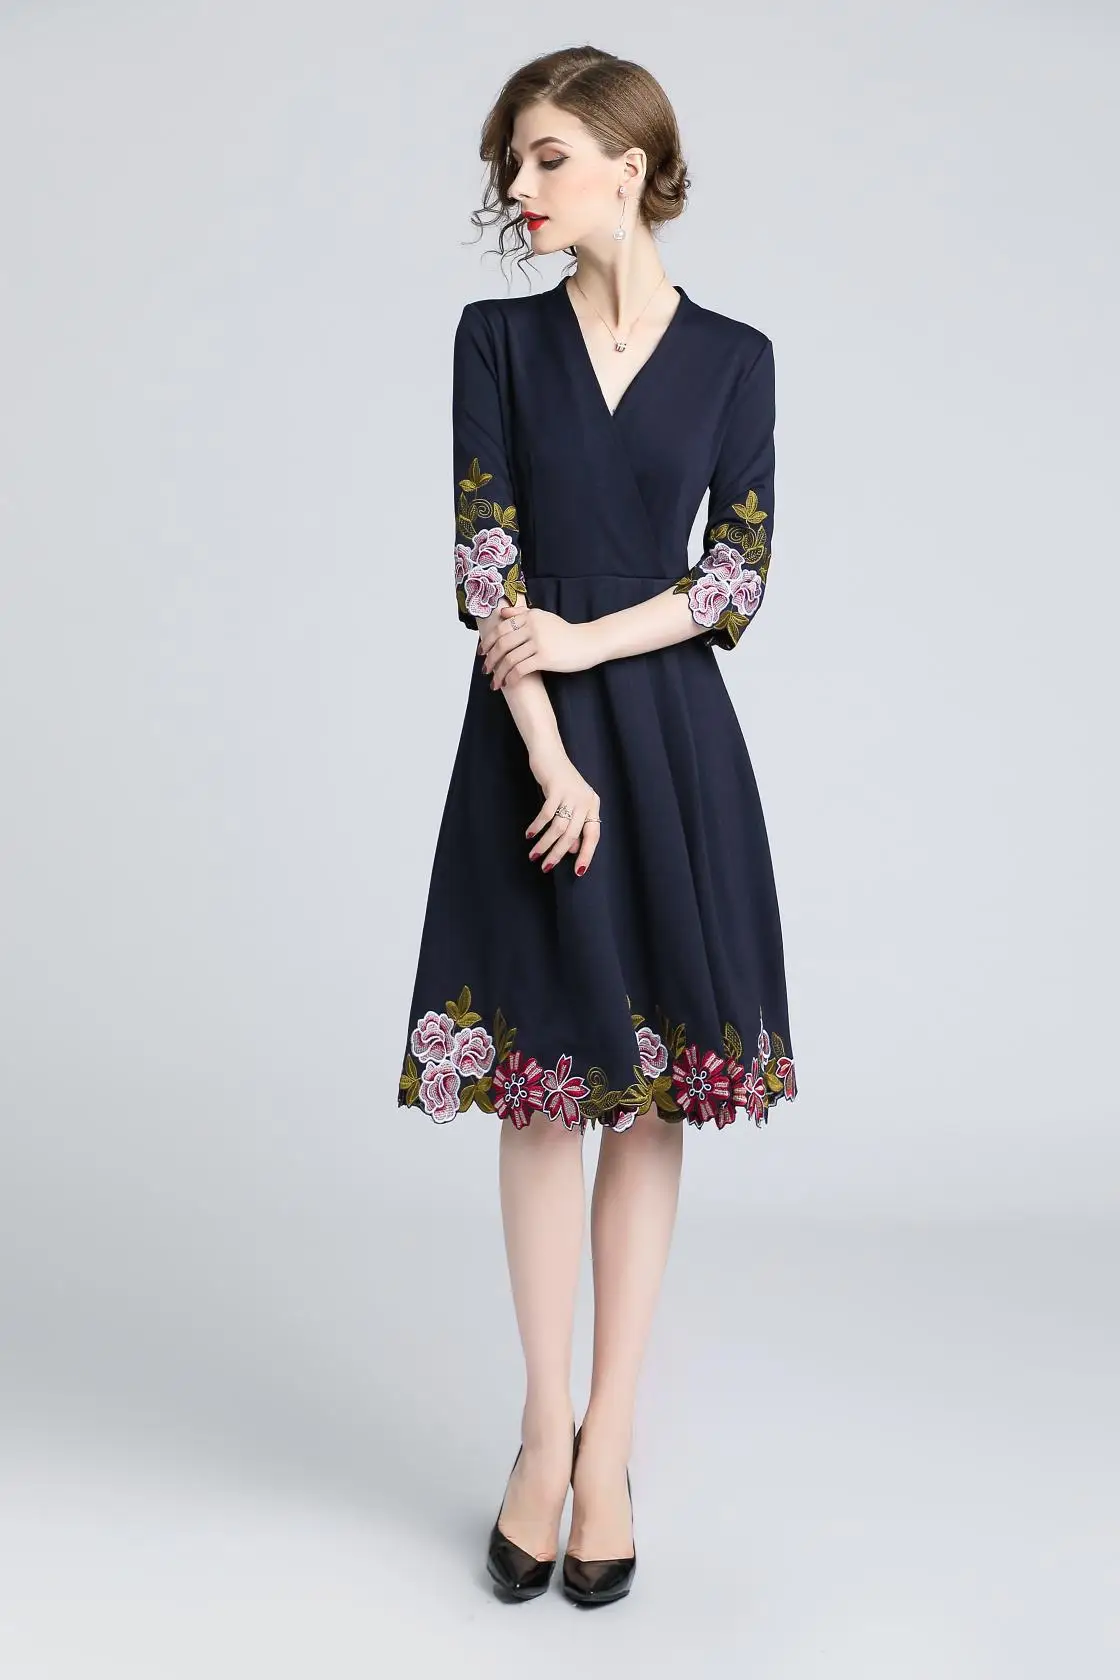 S-xxl весенне-осеннее женское платье цветочный узор вышивка снизу окантовка манжеты темно-синее платье v-образный вырез 3/4 рукав винтажное платье